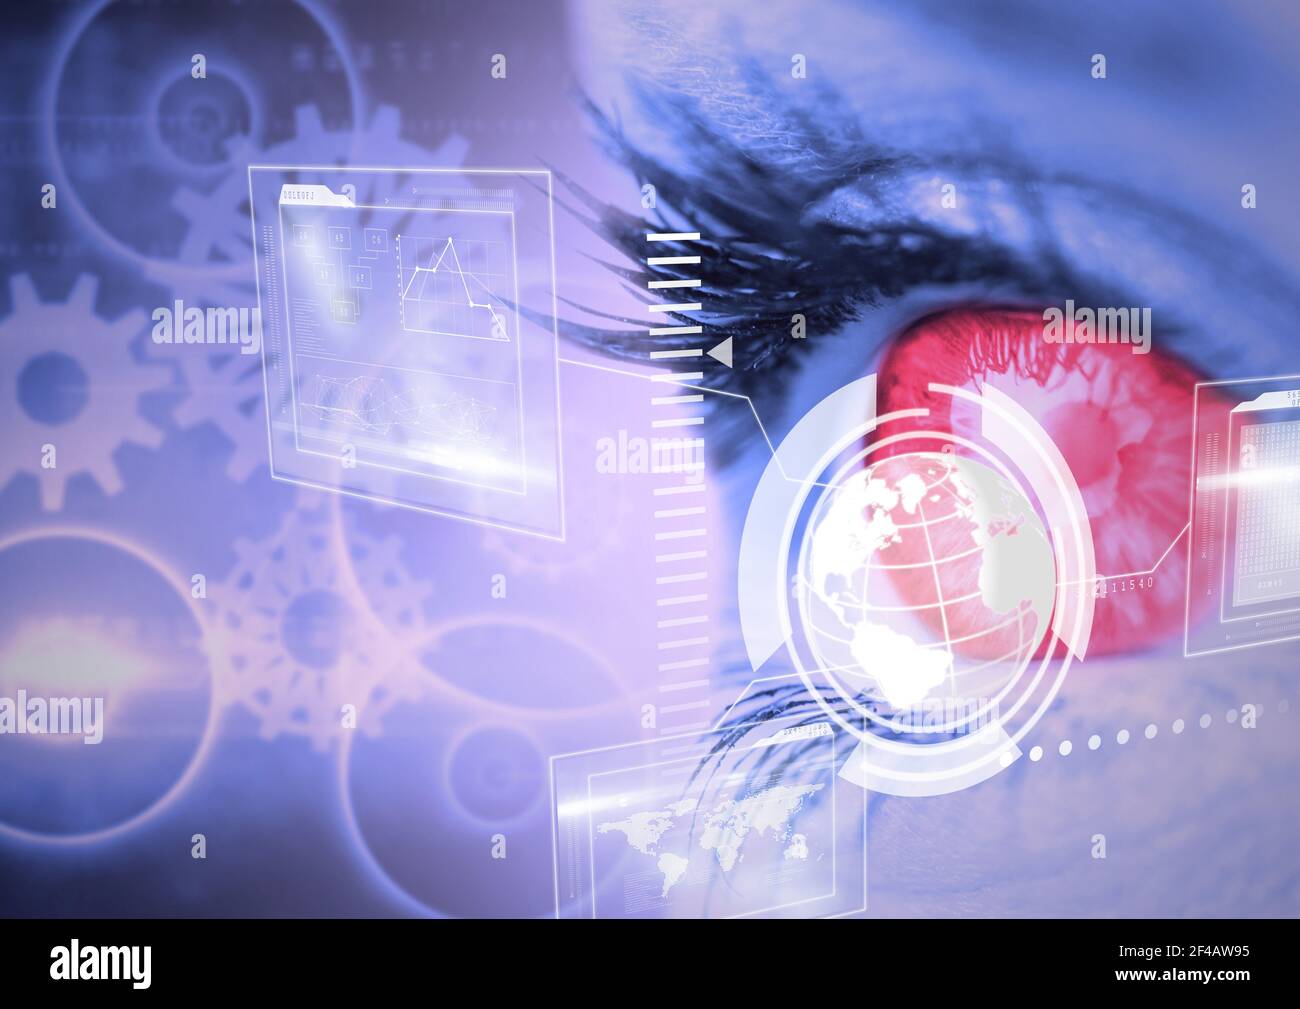 Interfaccia digitale con elaborazione dei dati a fronte di un primo piano di donne occhio umano Foto Stock